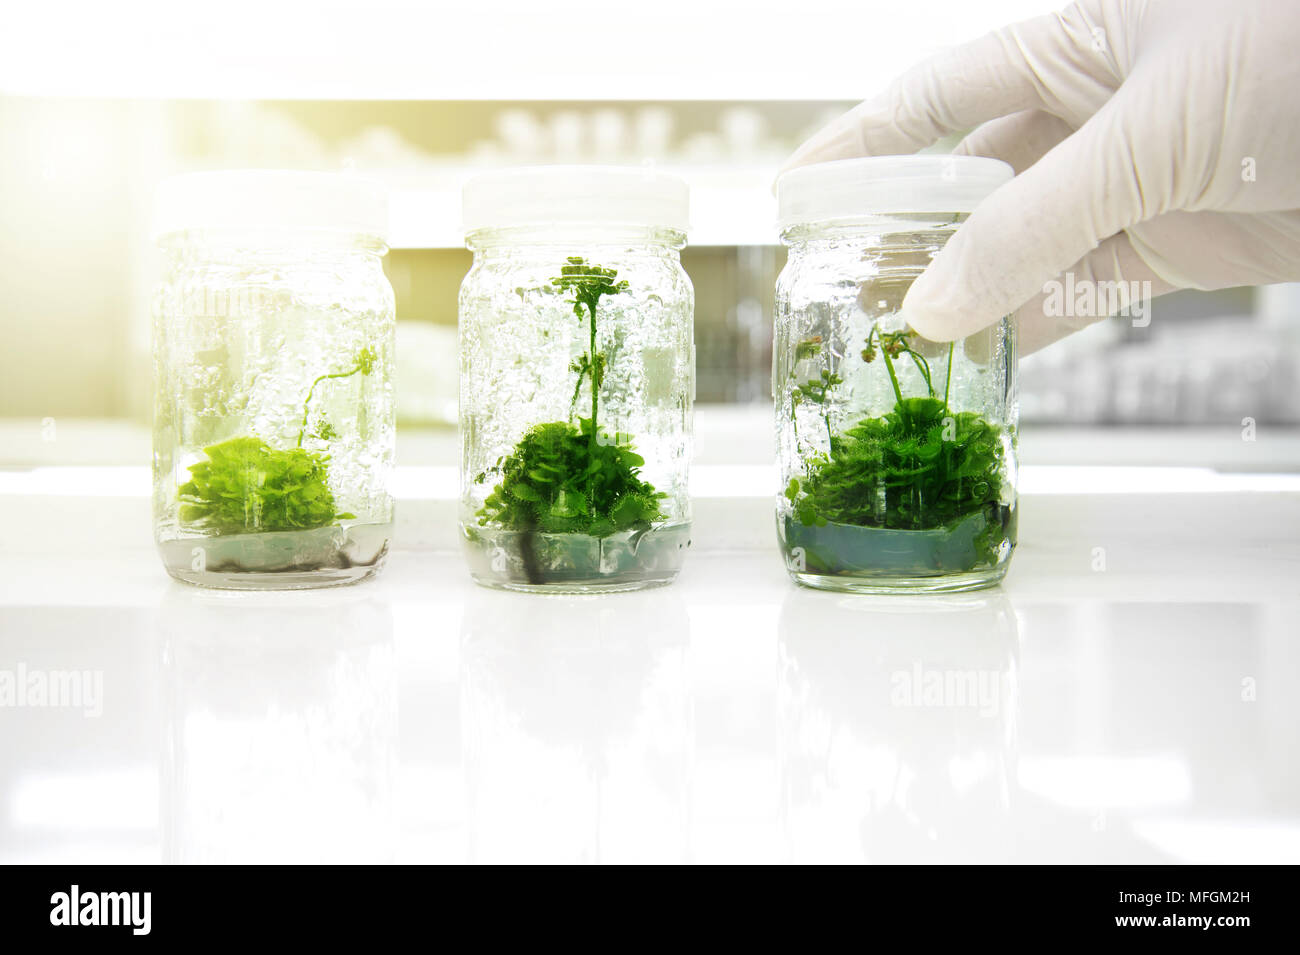 Trois plantes vertes, culture de tissus dans le flacon en verre holding sur la biotechnologie en main scientifique science laboratory background Banque D'Images